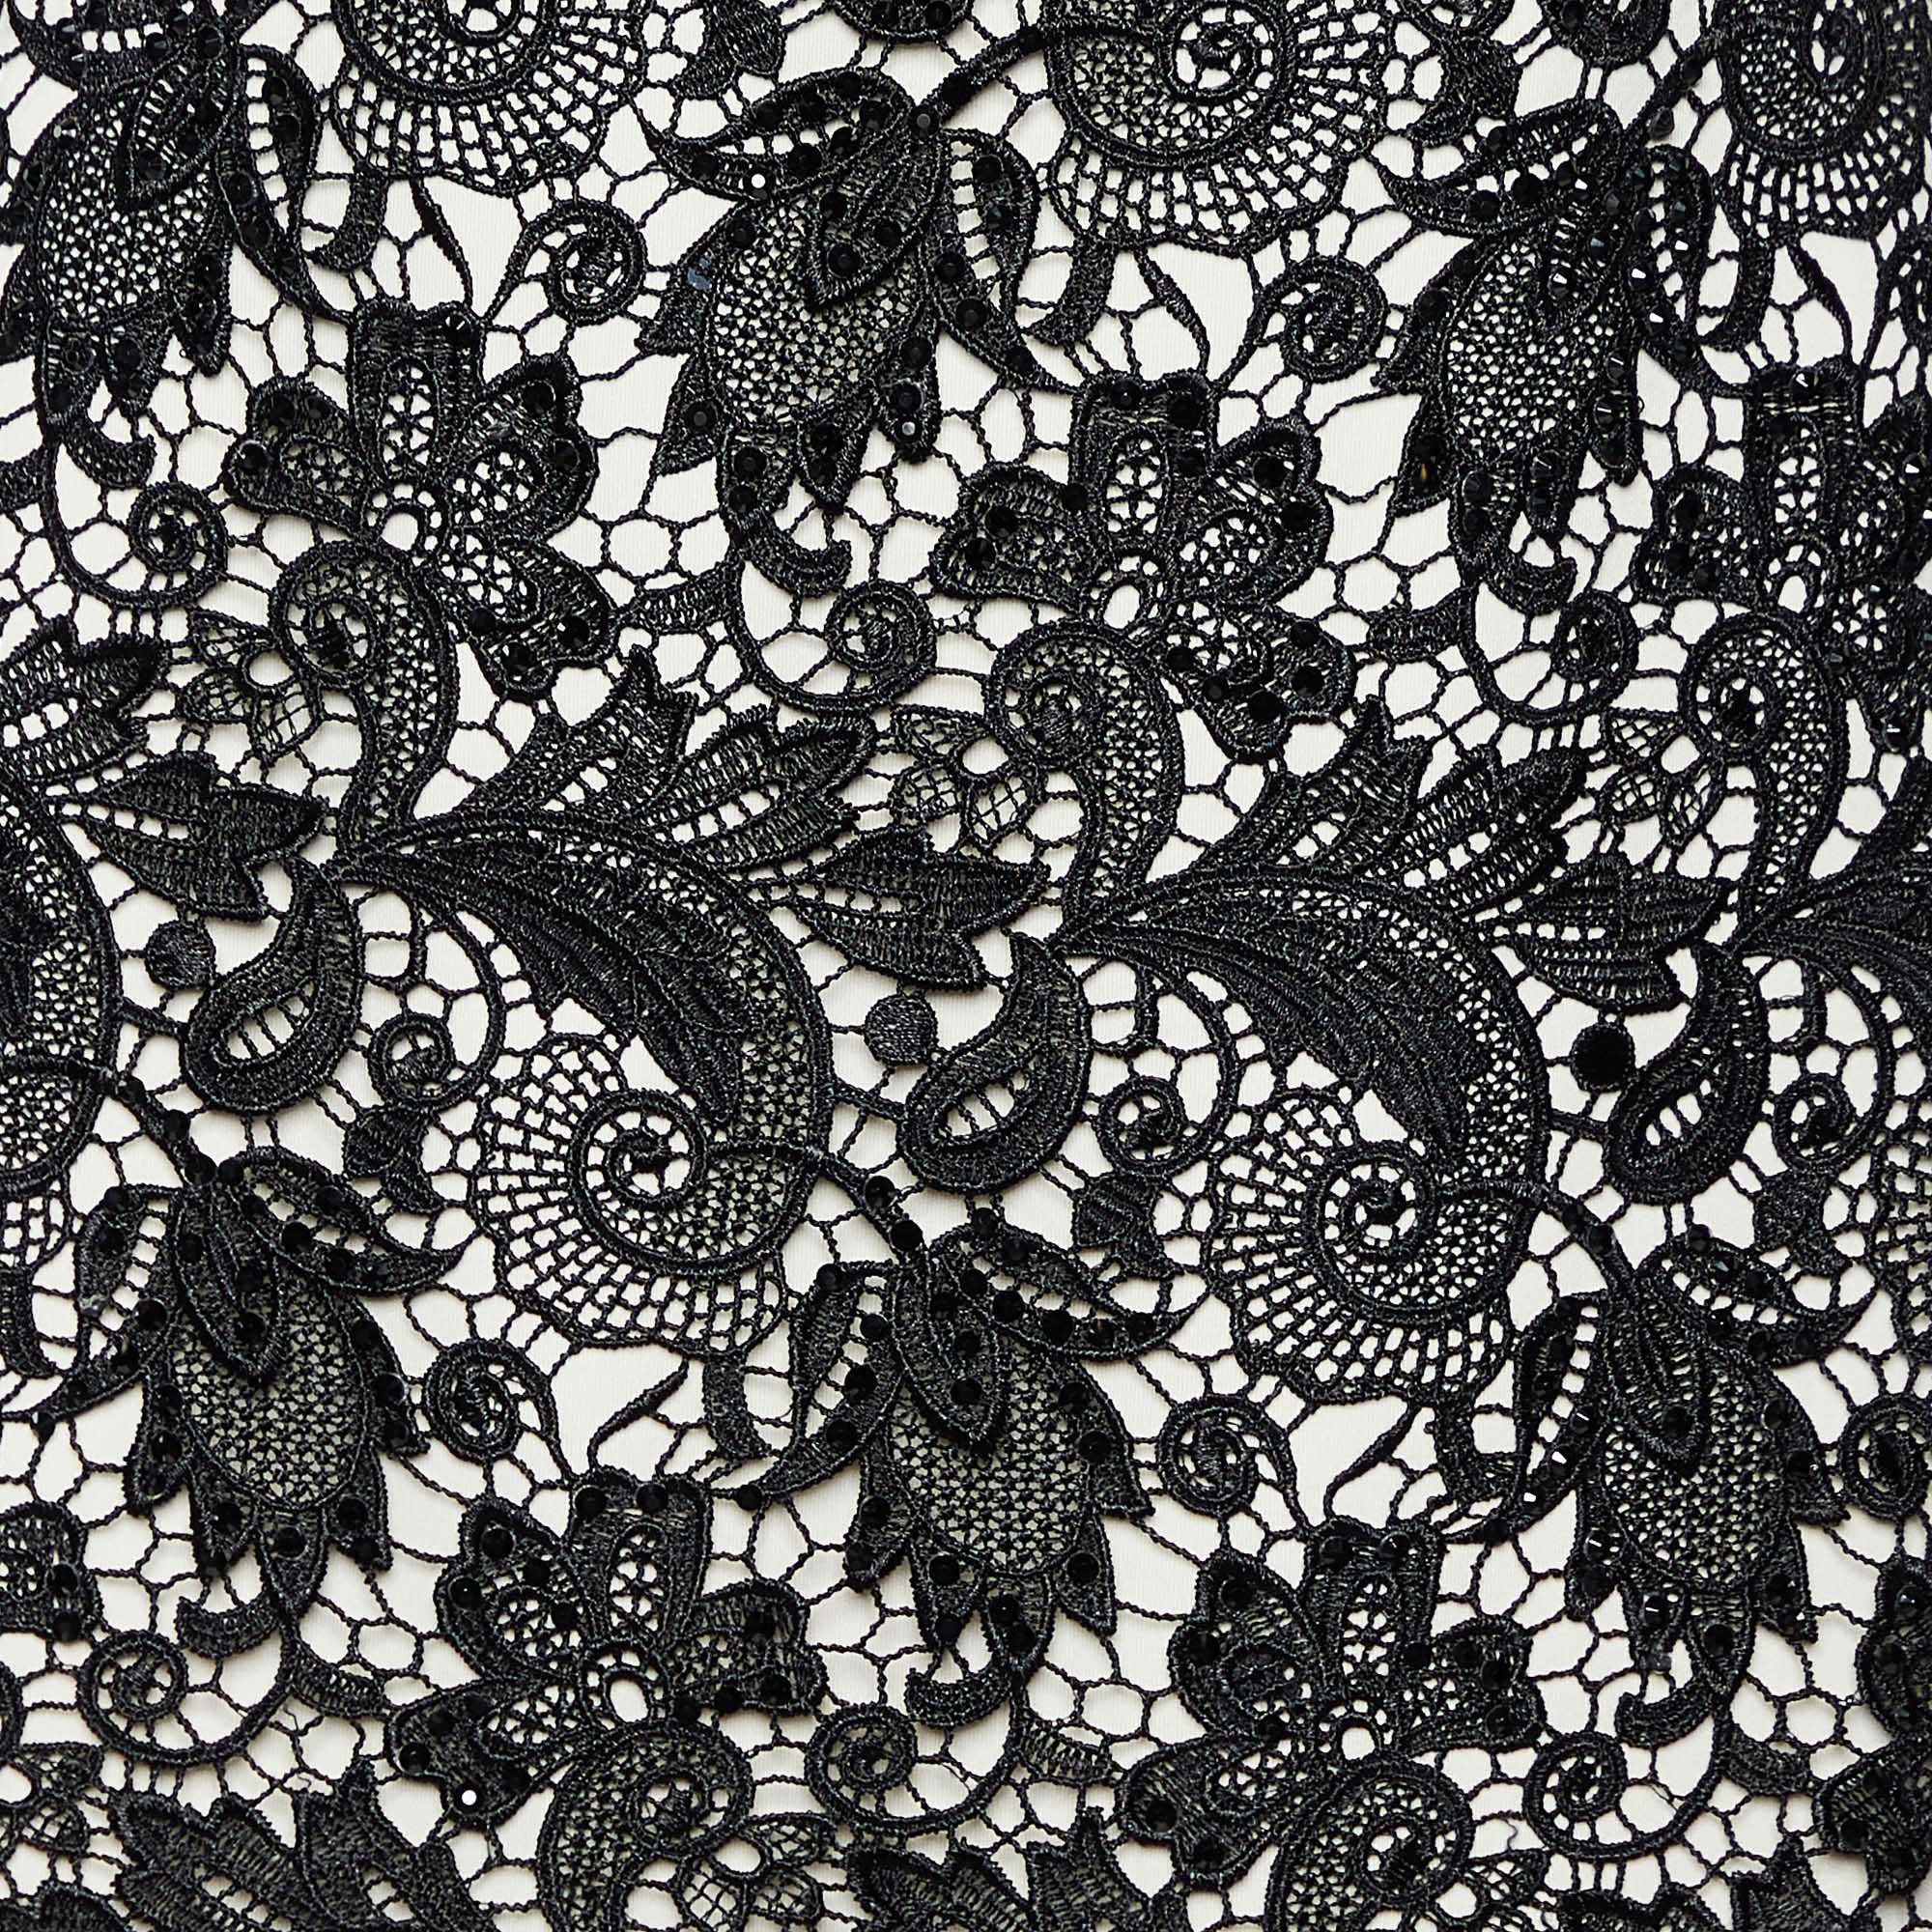 Tadashi Shoji White Knit & Black Embellished Lace Sleeveless Gown M